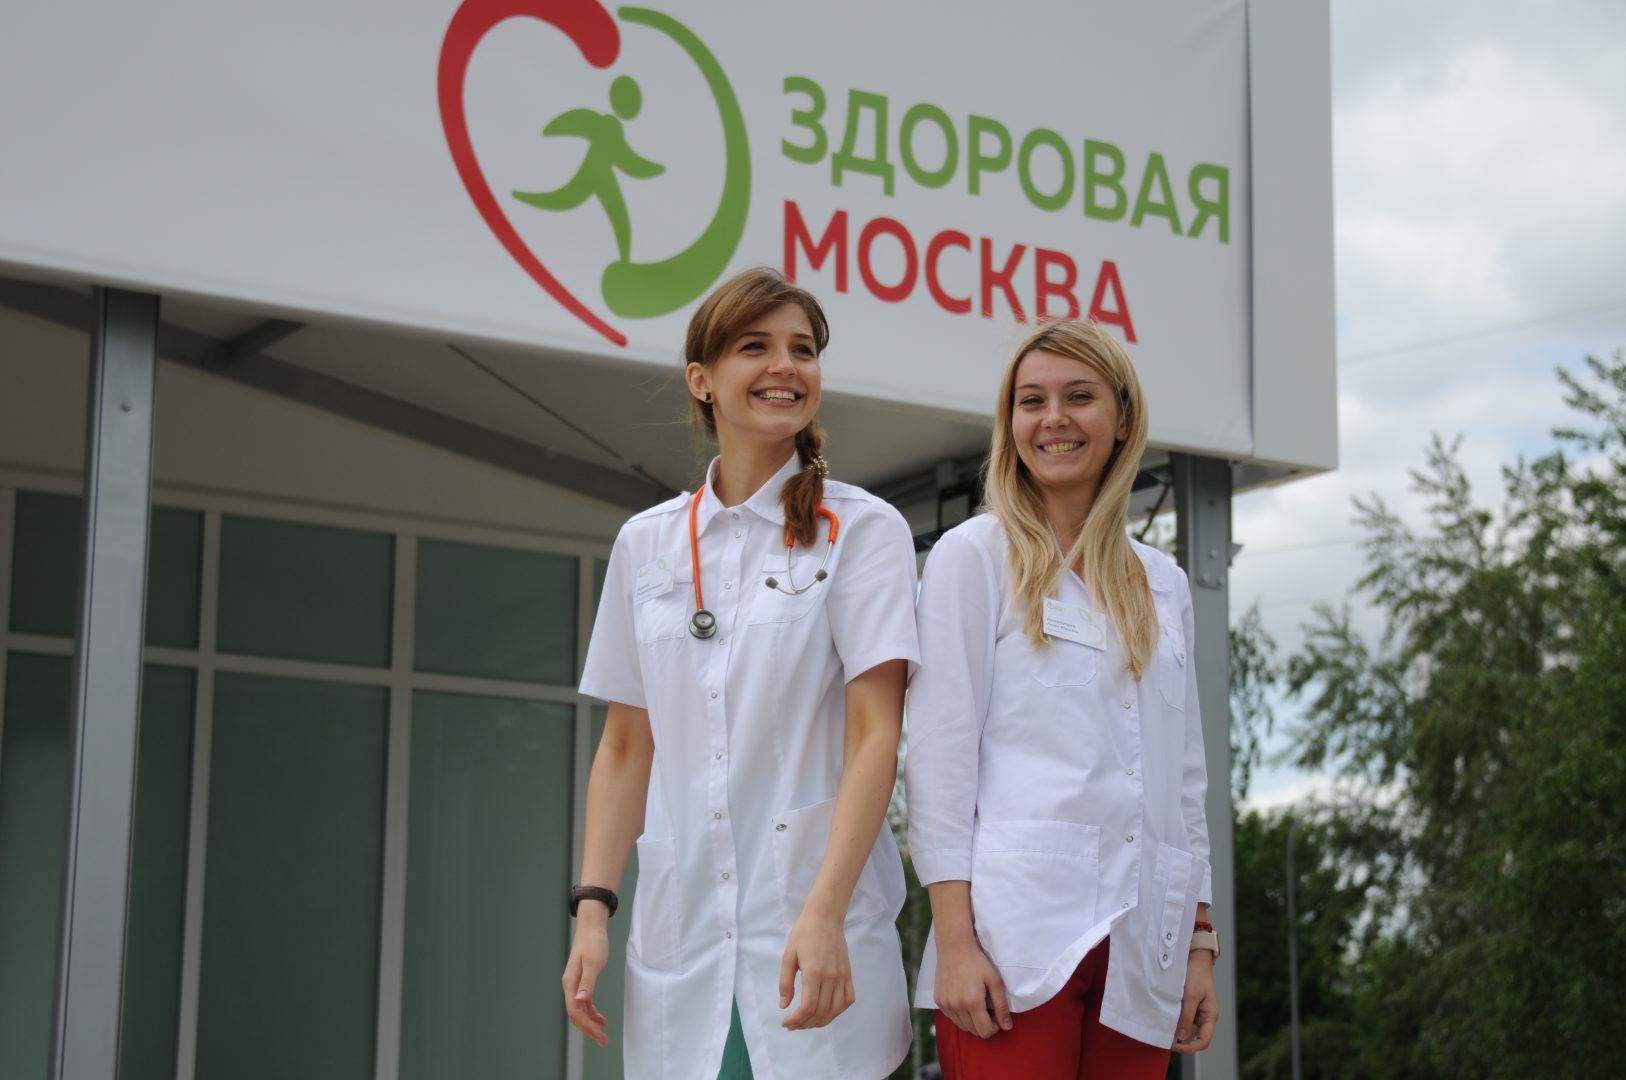 Передвижные флюорографы располагаются рядом с павильонами «Здоровая Москва». Фото: Светлана Колоскова